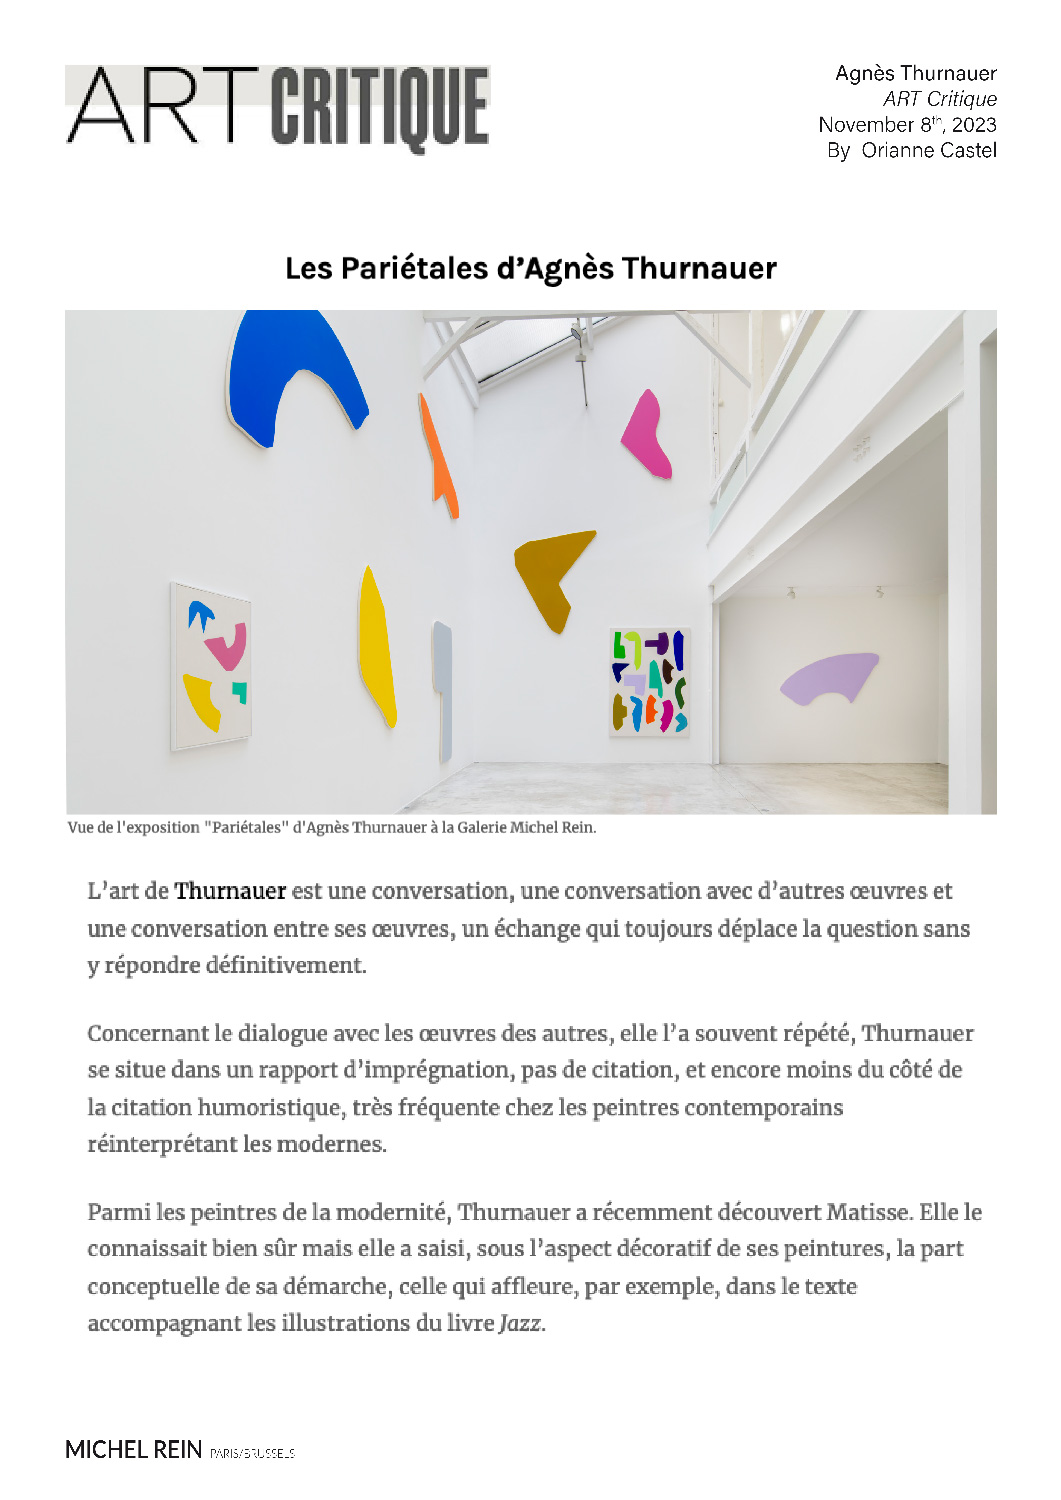 Les Pariétales d'Agnès Thurnauer - Art Critique